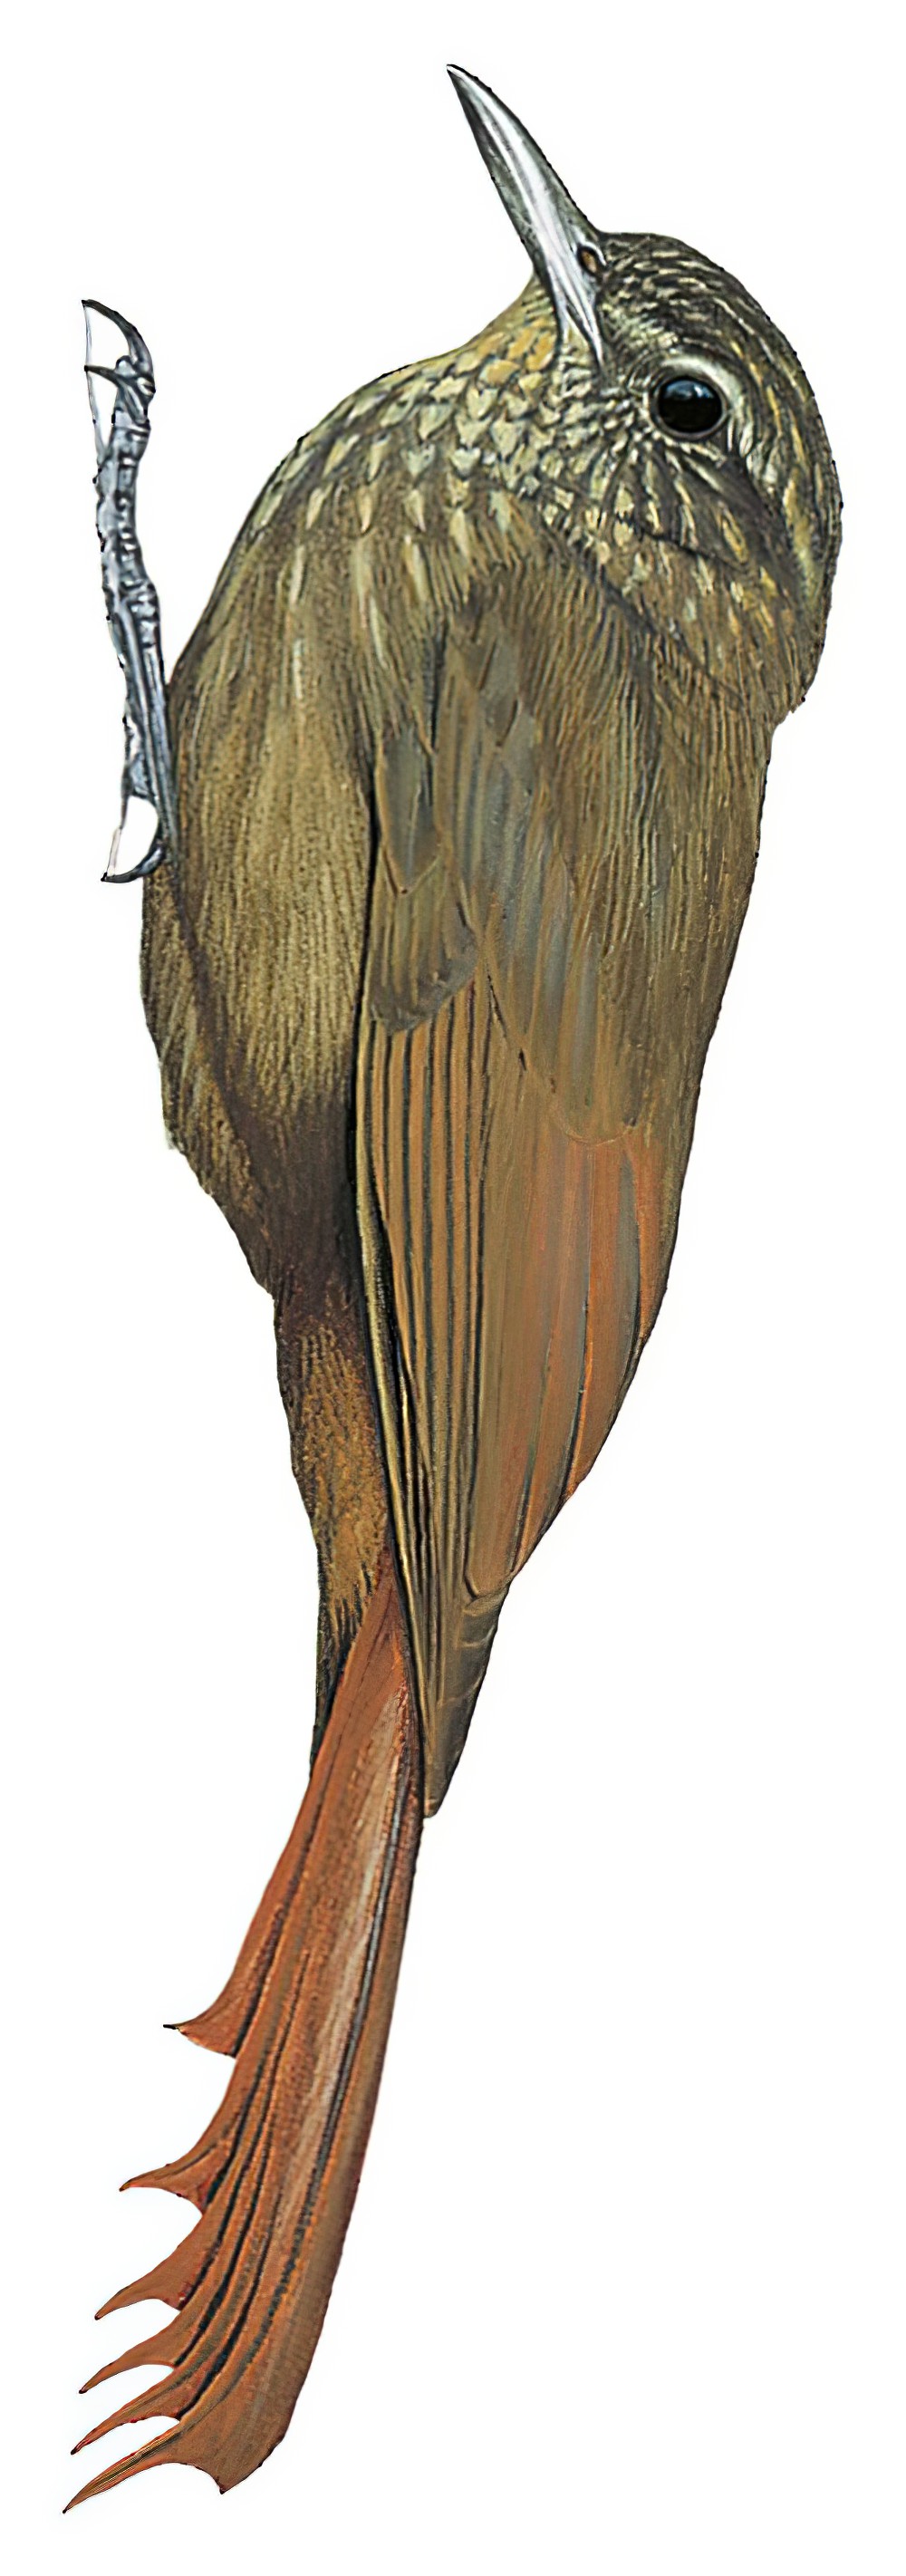 斑喉䴕雀 / Spot-throated Woodcreeper / Certhiasomus stictolaemus